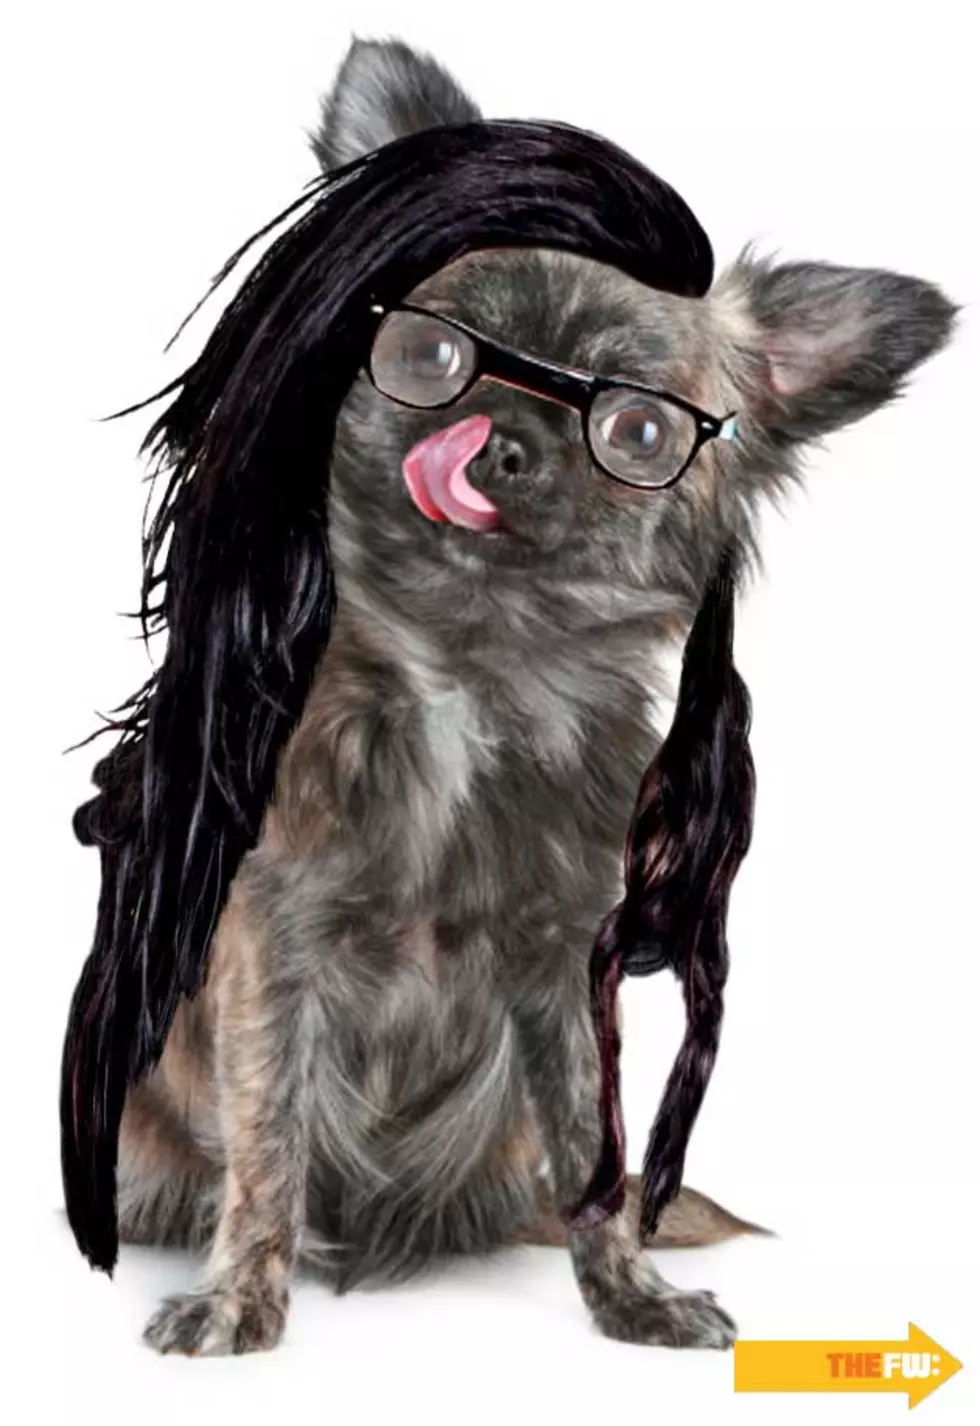 Animals With Skrillex Hair – Dog